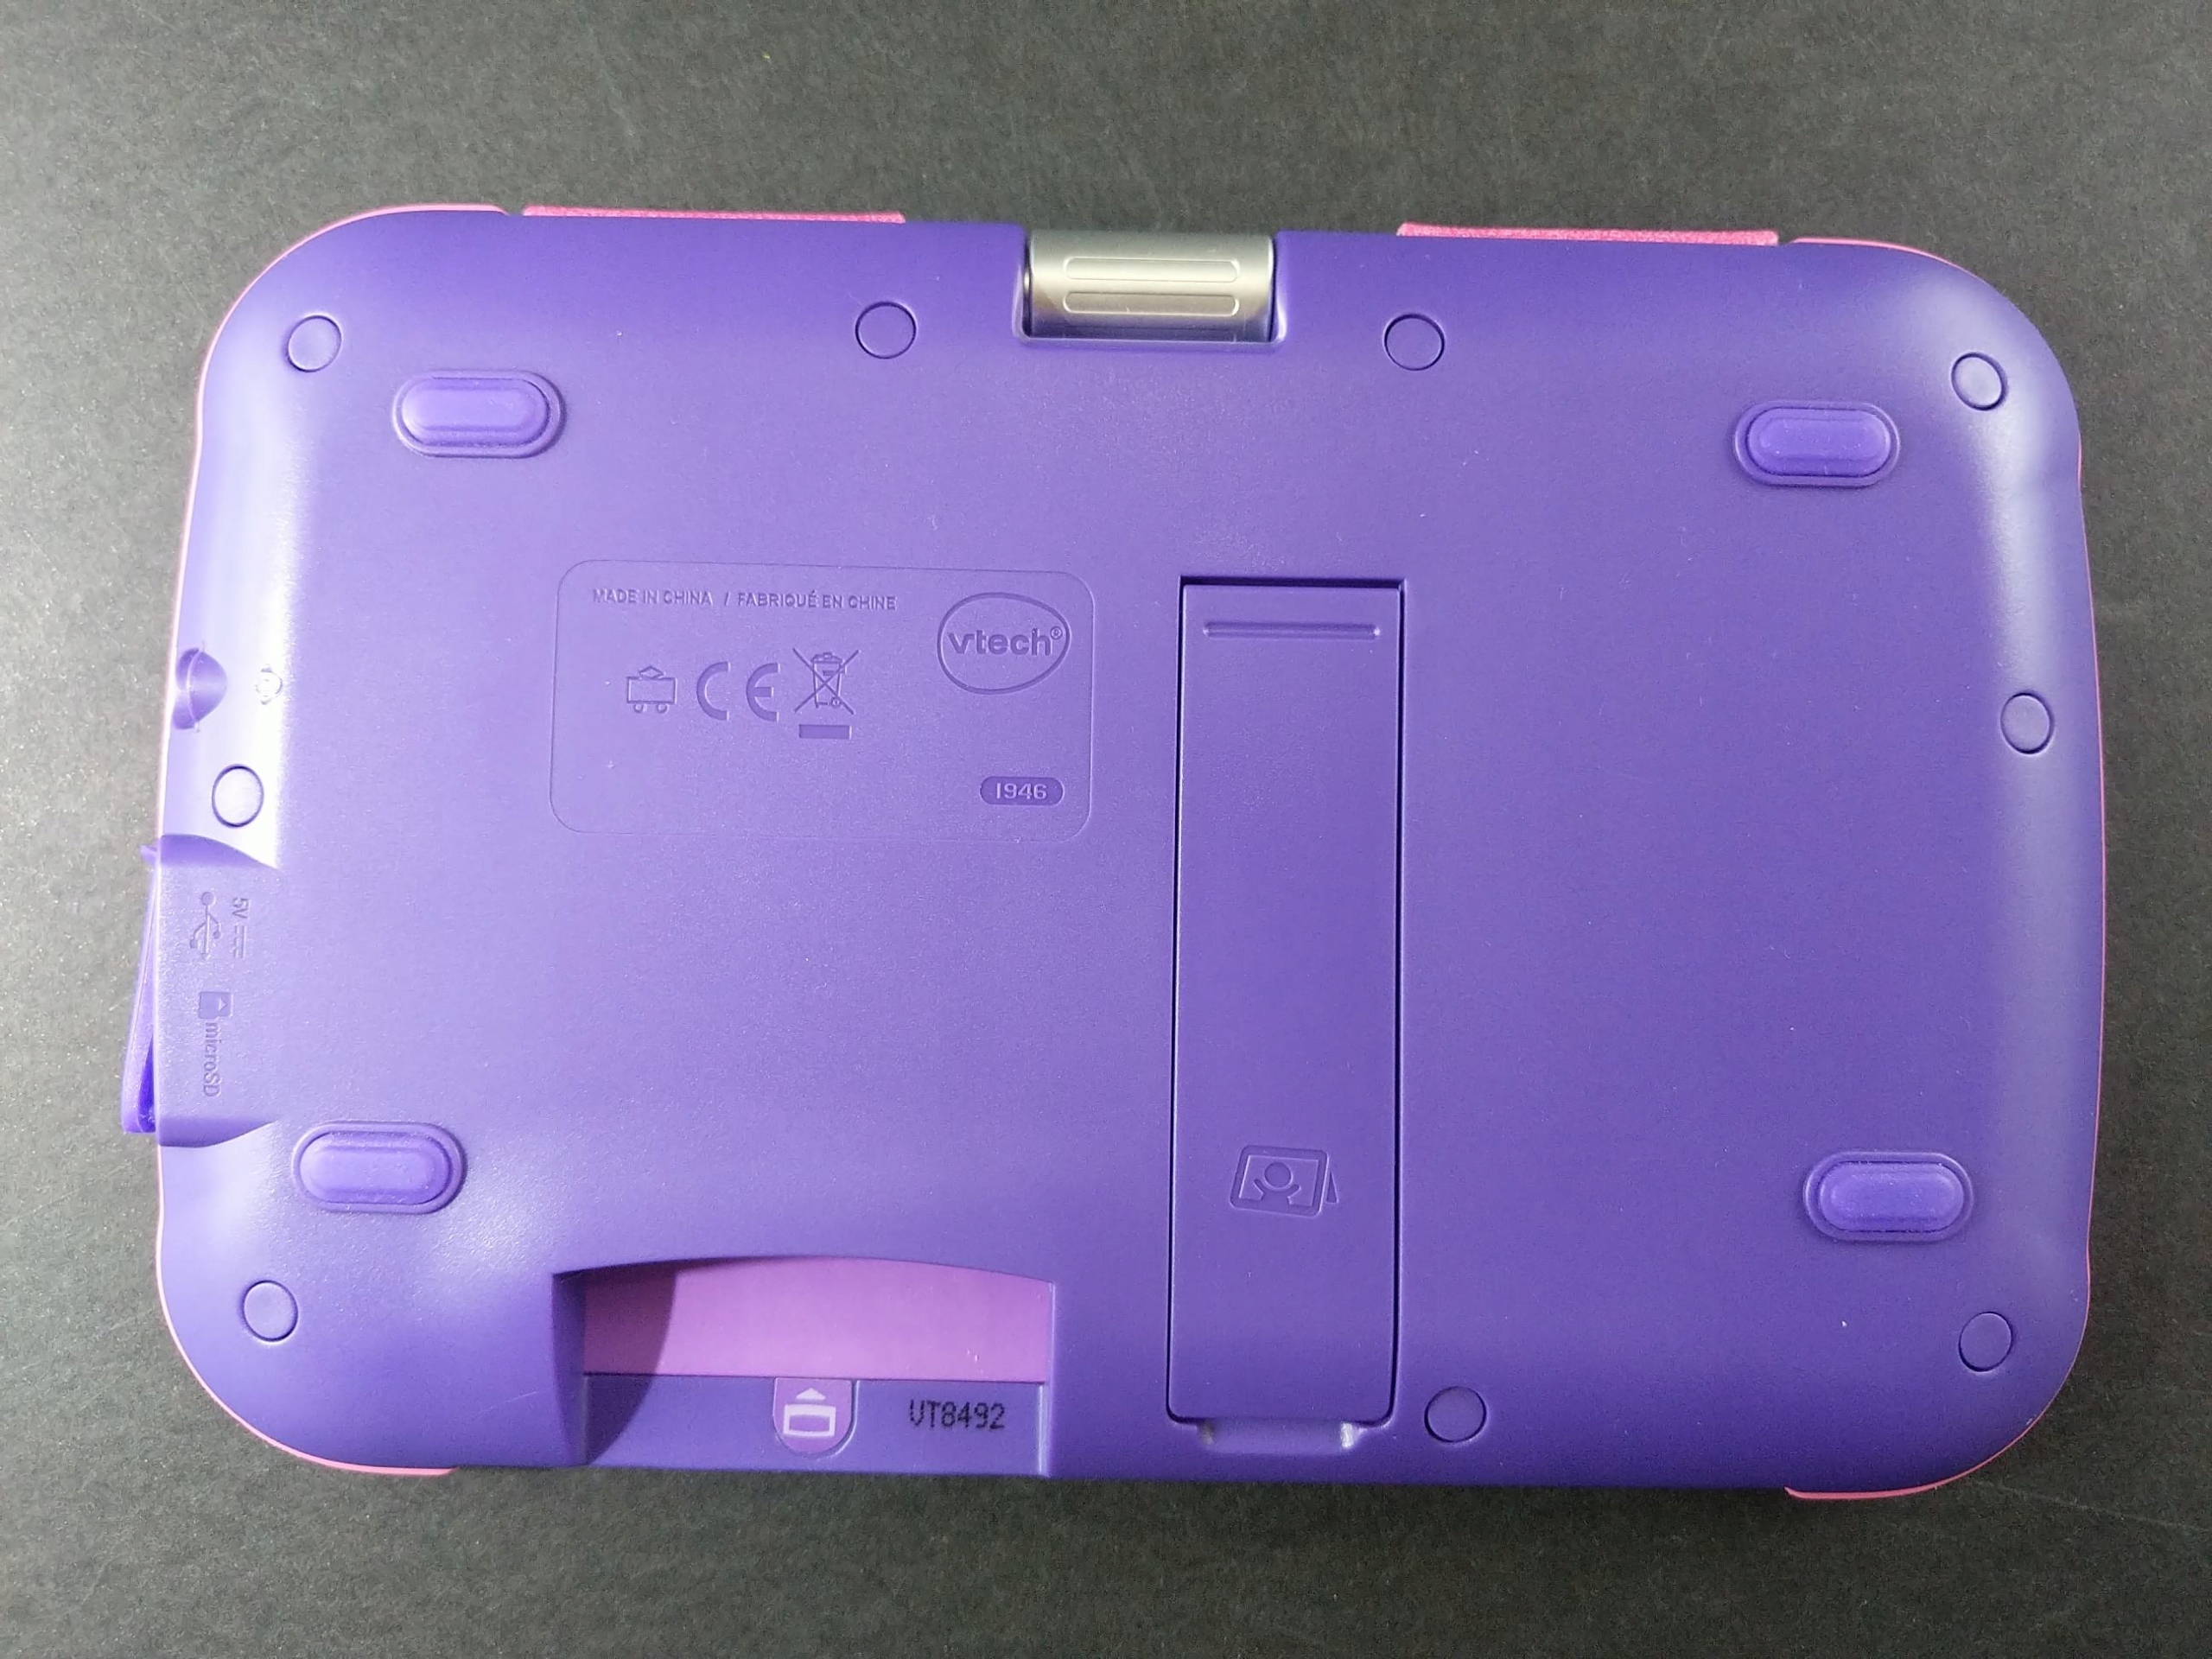 ② Roze Storio Max XL 2.0 Vtech. Kindertablet in originele doos — Jouets